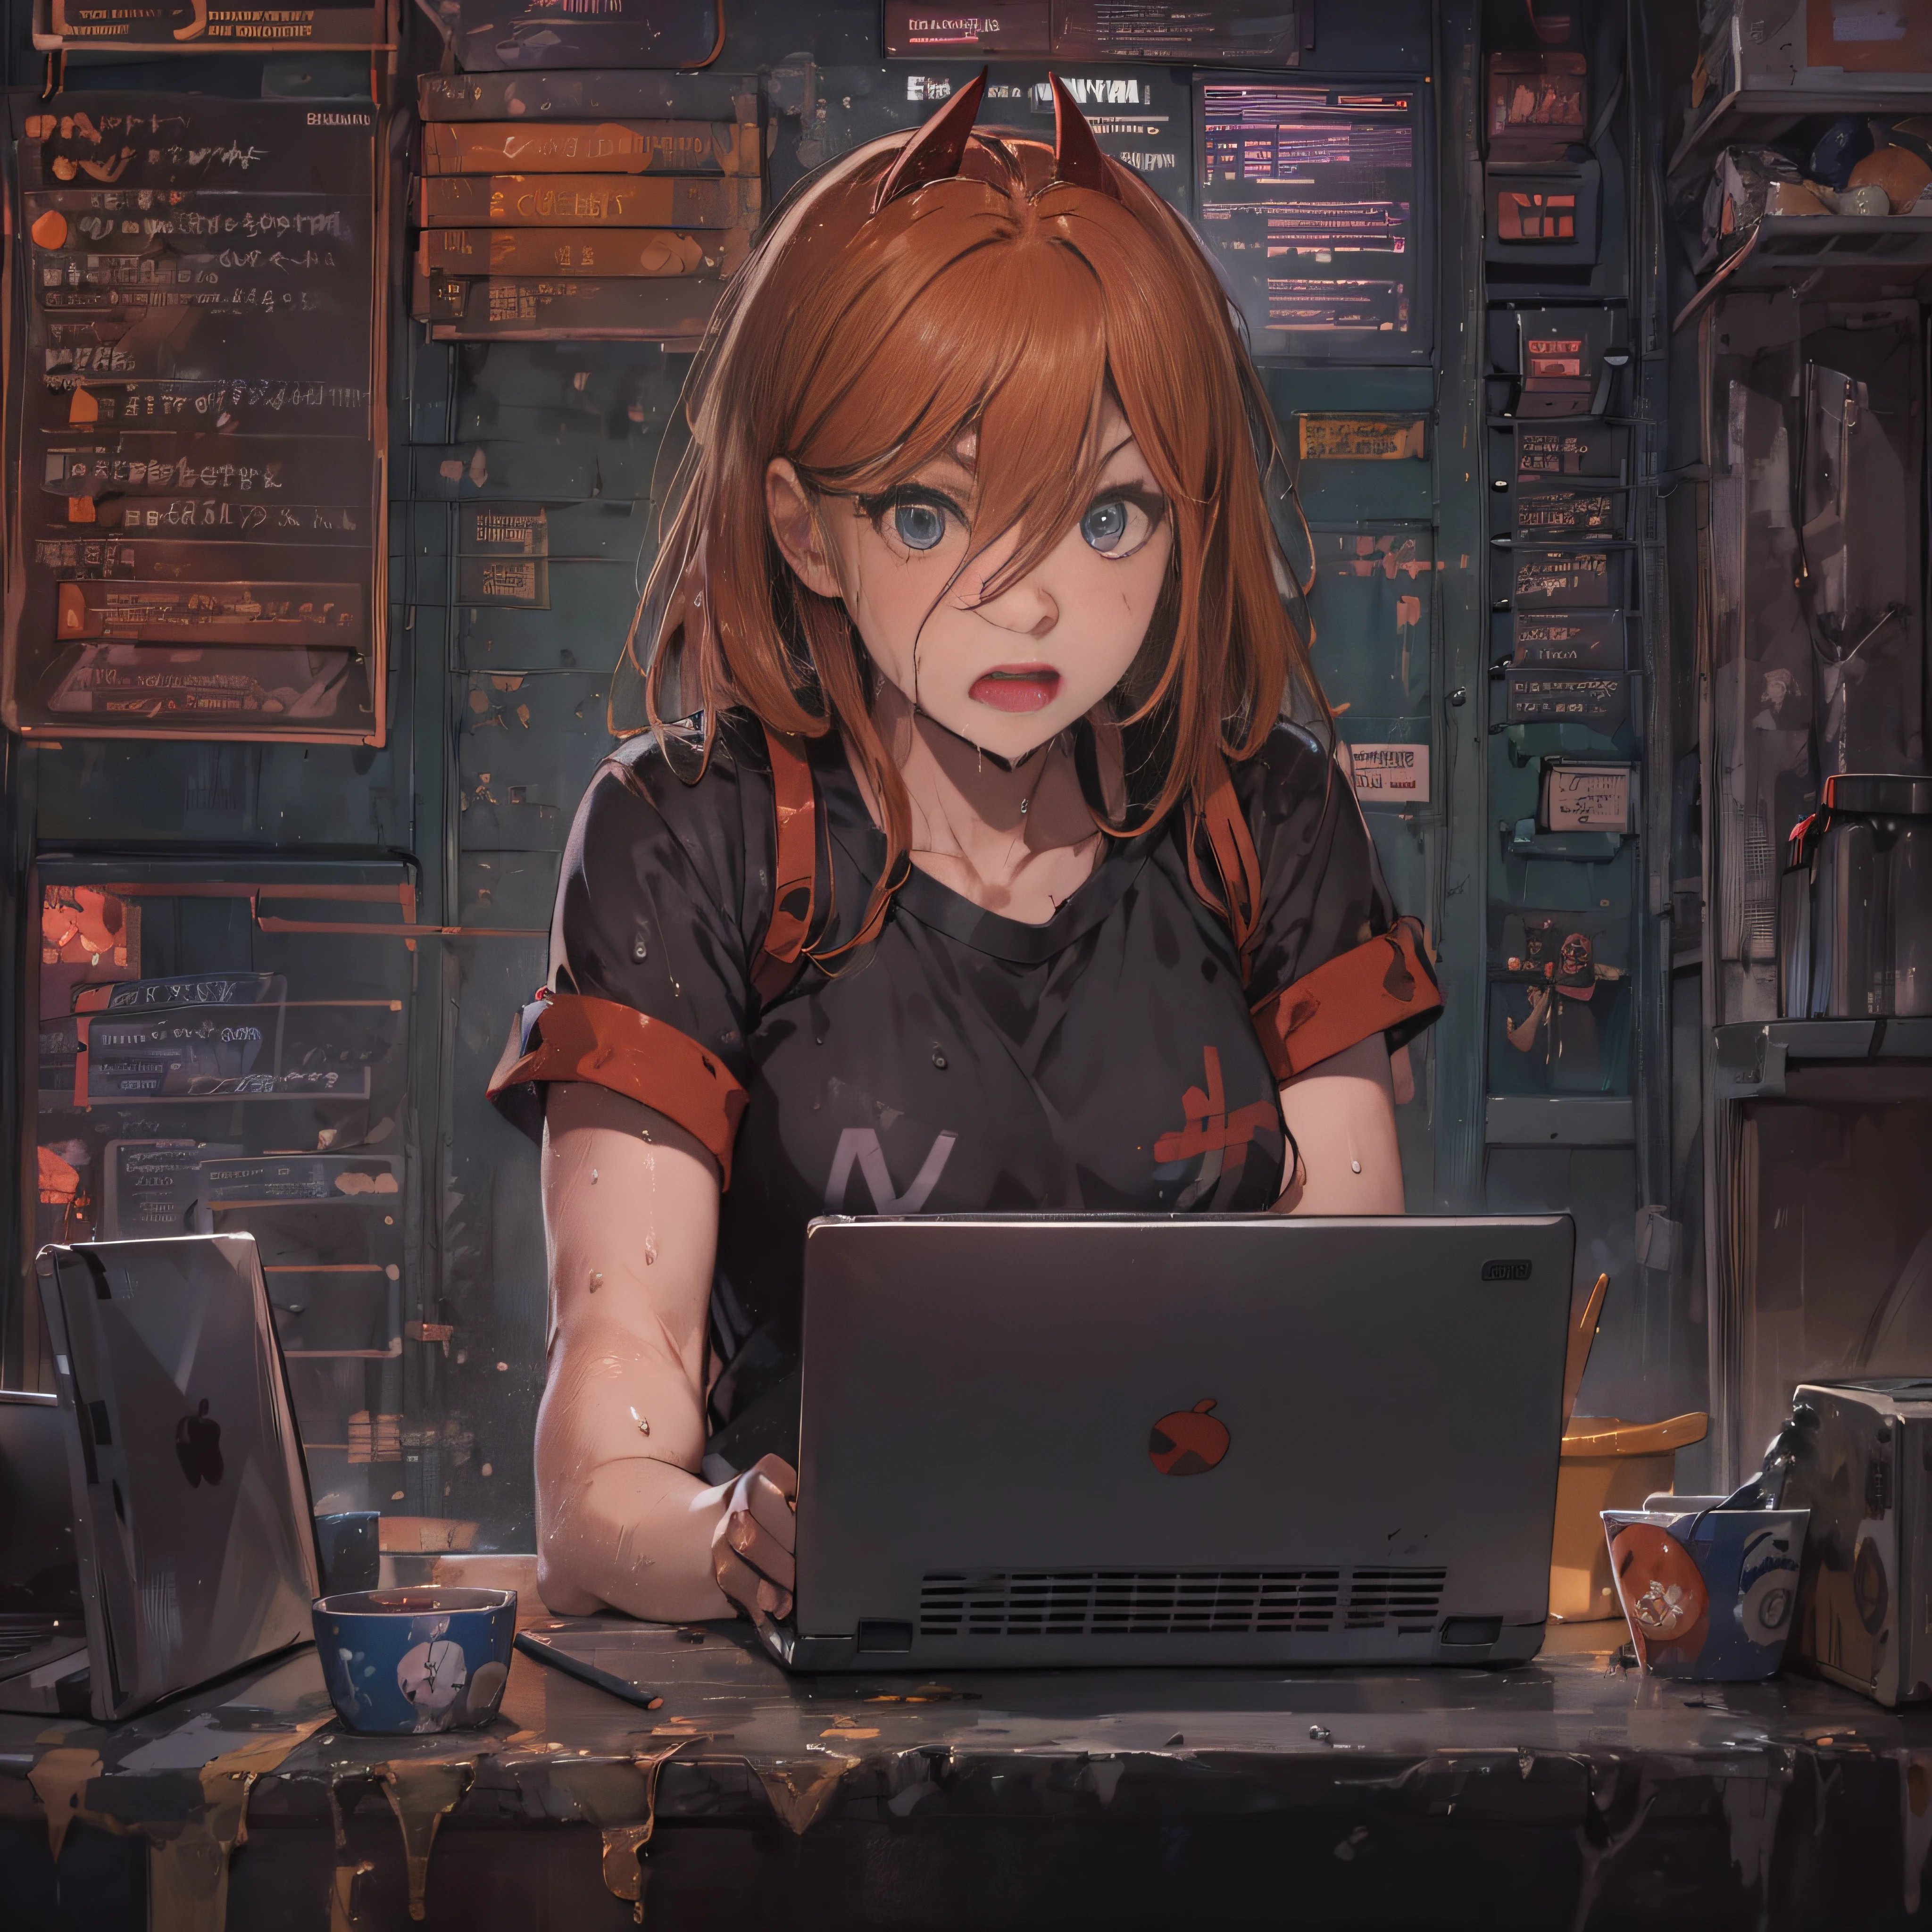 un hacker parle de cybersécurité: cheveux roux avec une frange sans terrier, chemise noire, culotte noire, mouillé, serveurs, cyber, ordinateur portable.